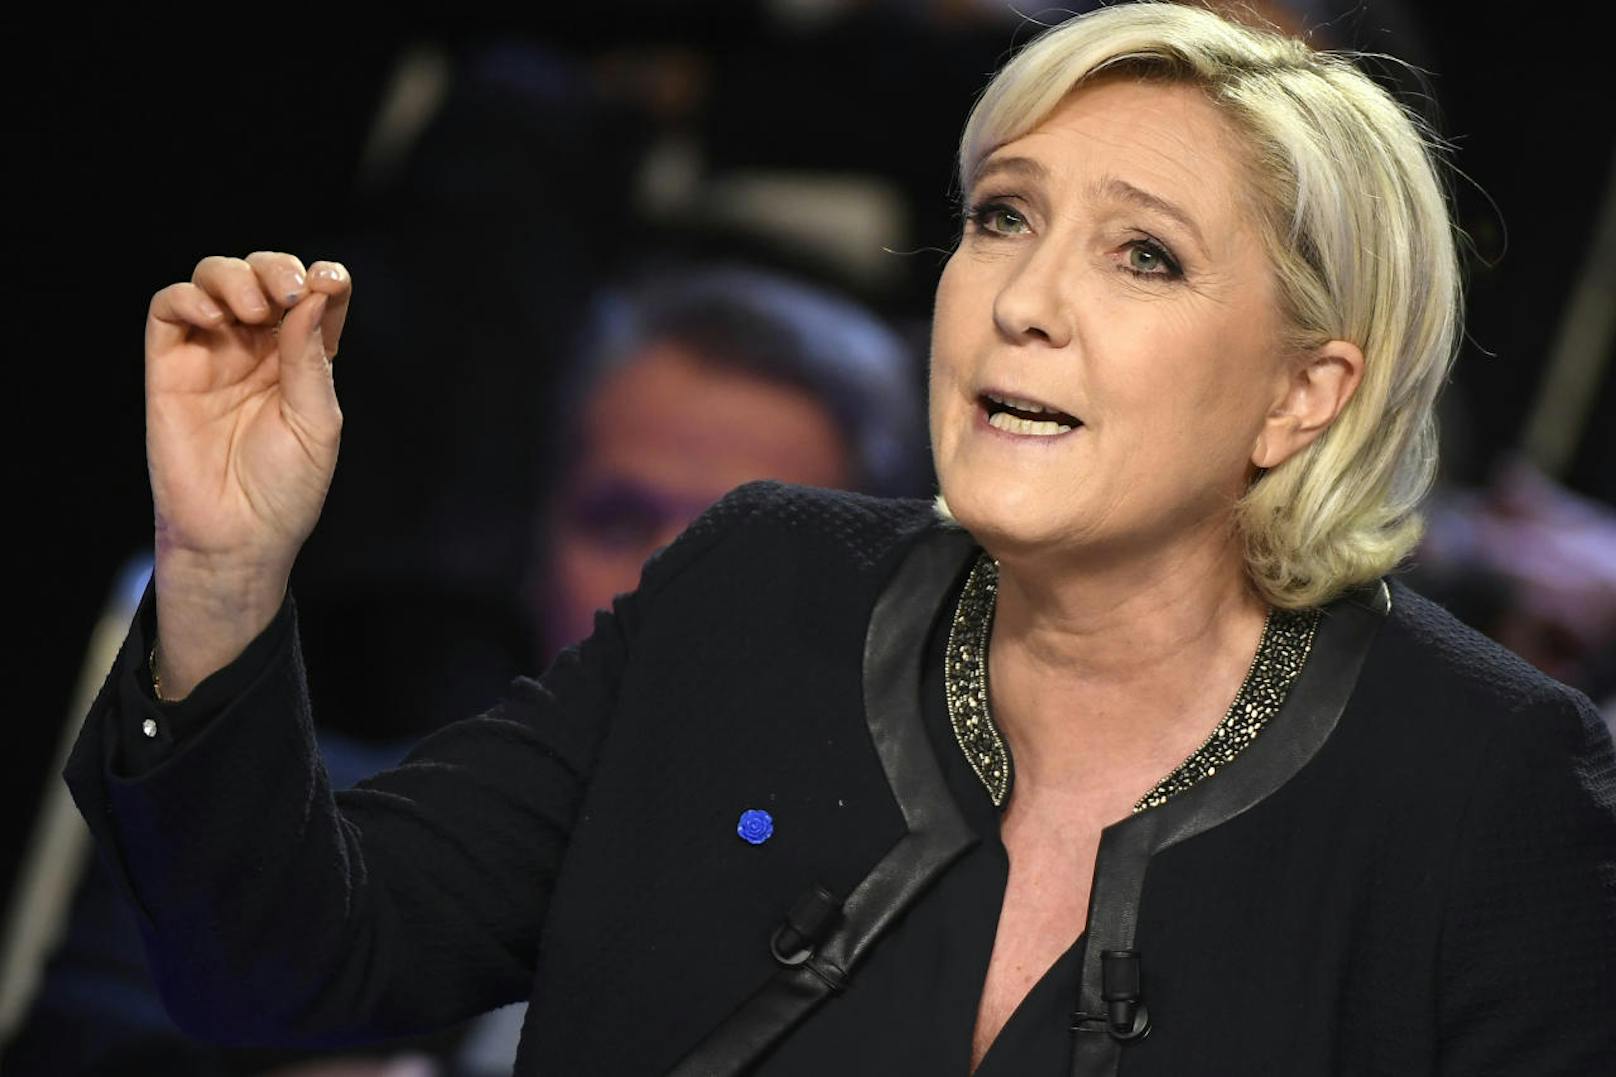 Jetzt hat der EU-Gerichtshof (EuGH) in einem Urteil die Klage von Le Pen gegen einen Rückforderungsbeschluss des EU-Parlaments zurückgewiesen.